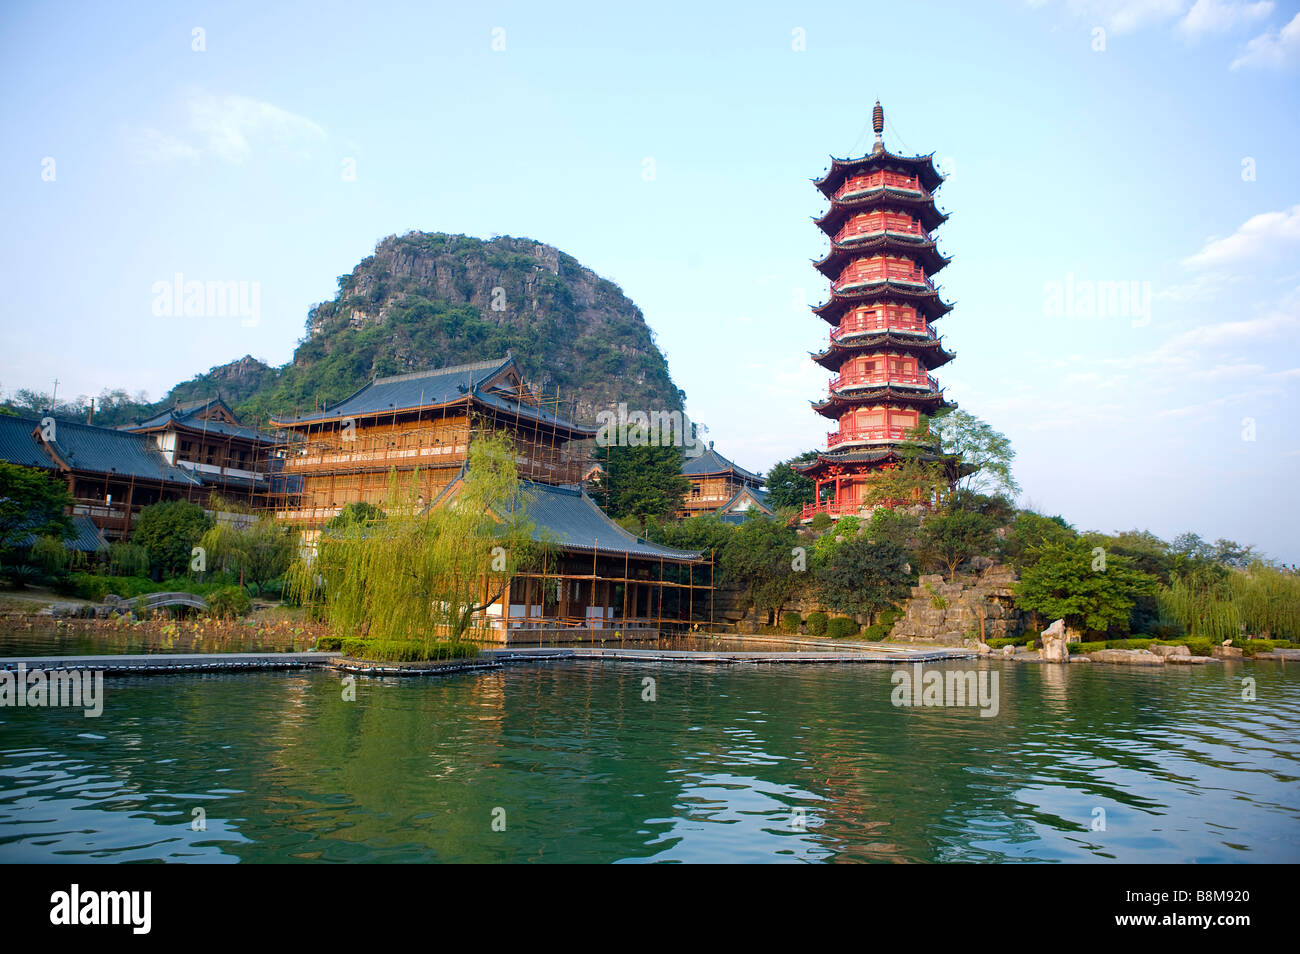 La torre e lo splendido paesaggio in Guilin della provincia di Guangxi Cina Foto Stock